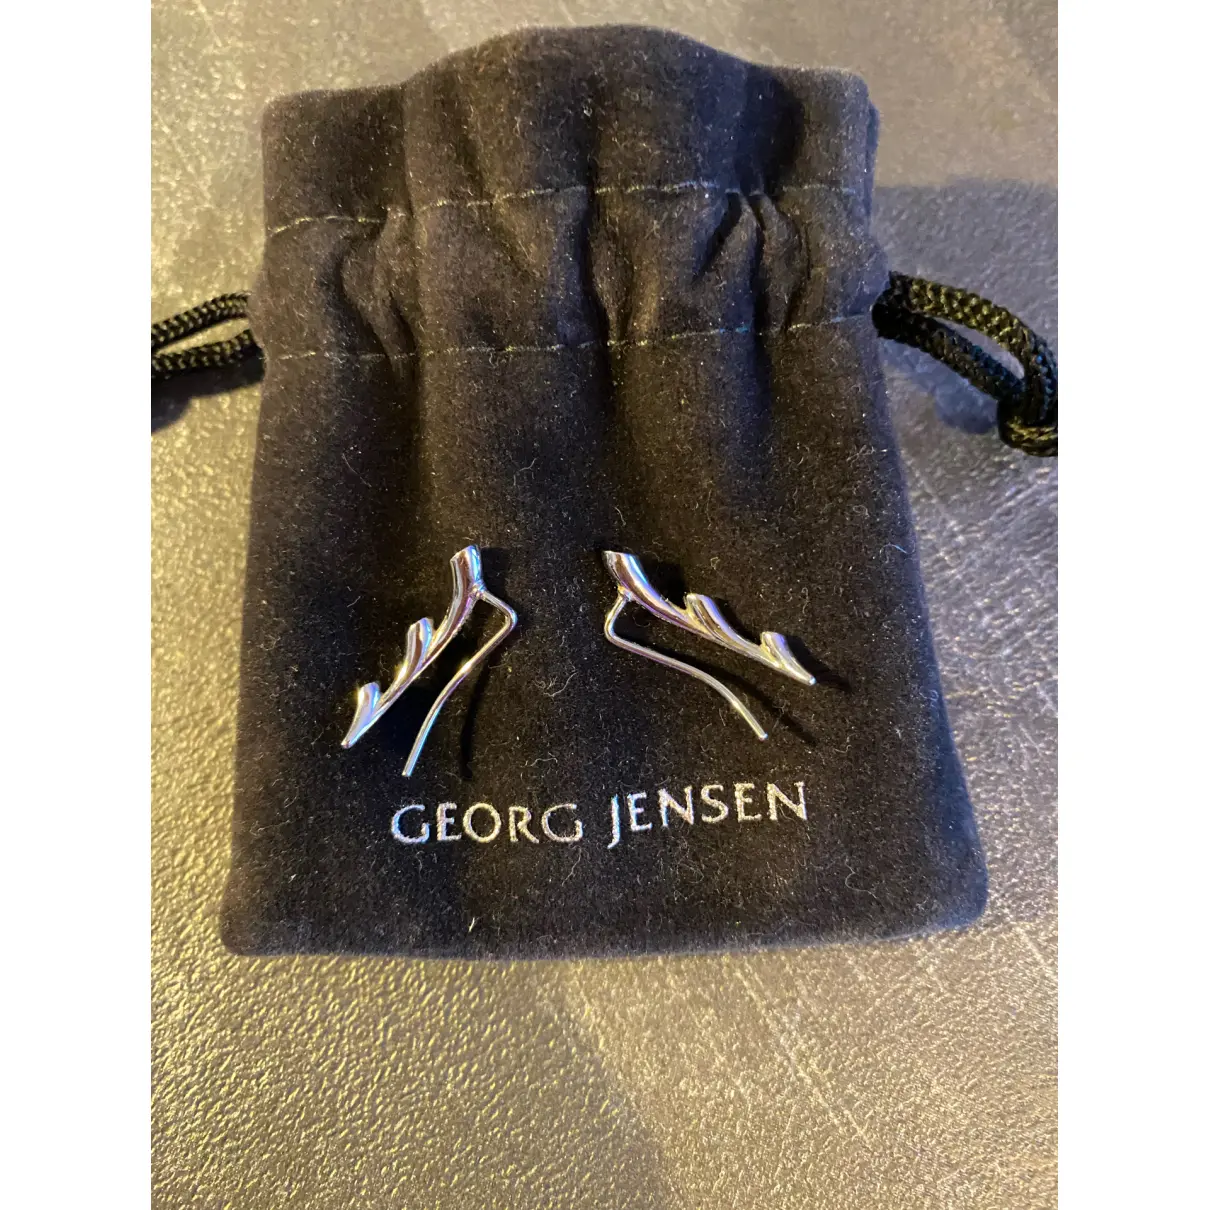 Buy Georg Jensen White gold earrings online